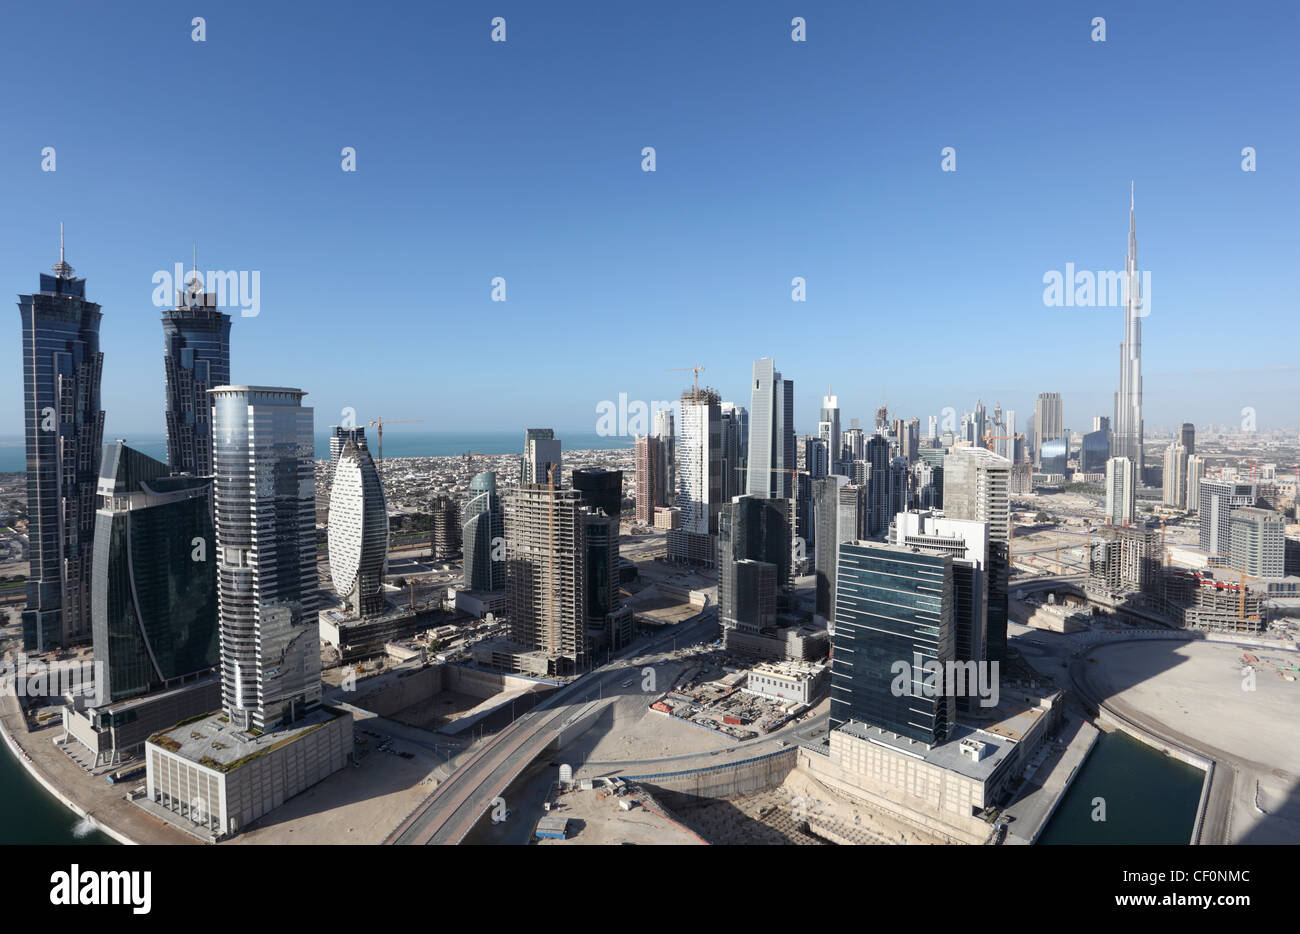 El centro de Dubai, Emiratos Árabes Unidos Foto de stock